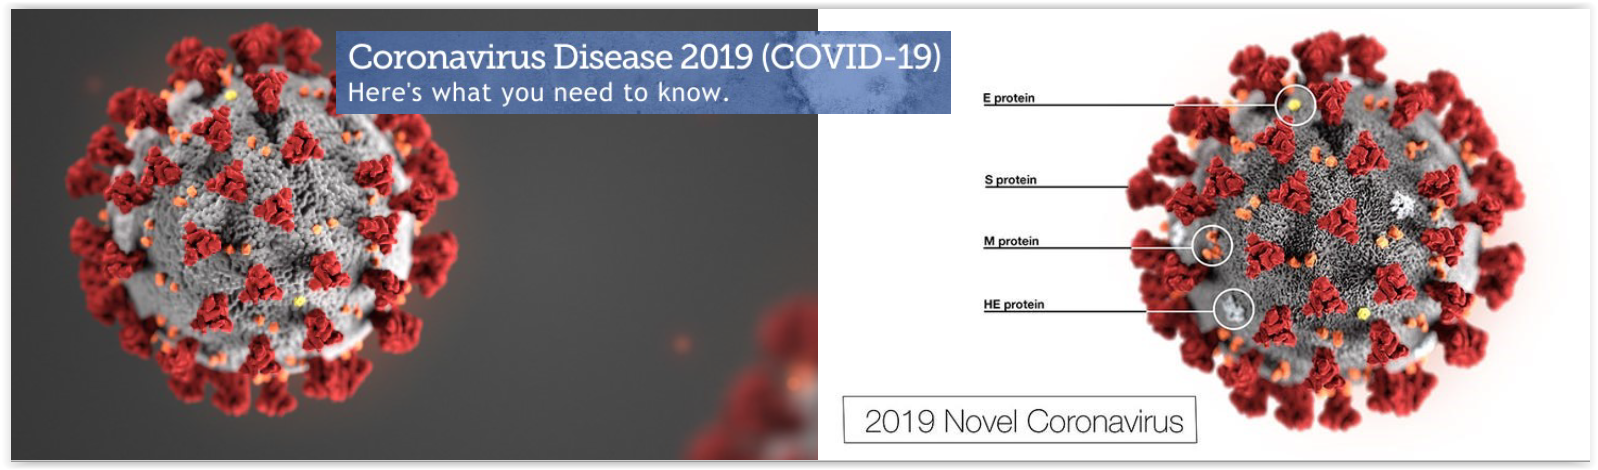 coronavirus-disease-2019-covid-19-office-of-school-safety